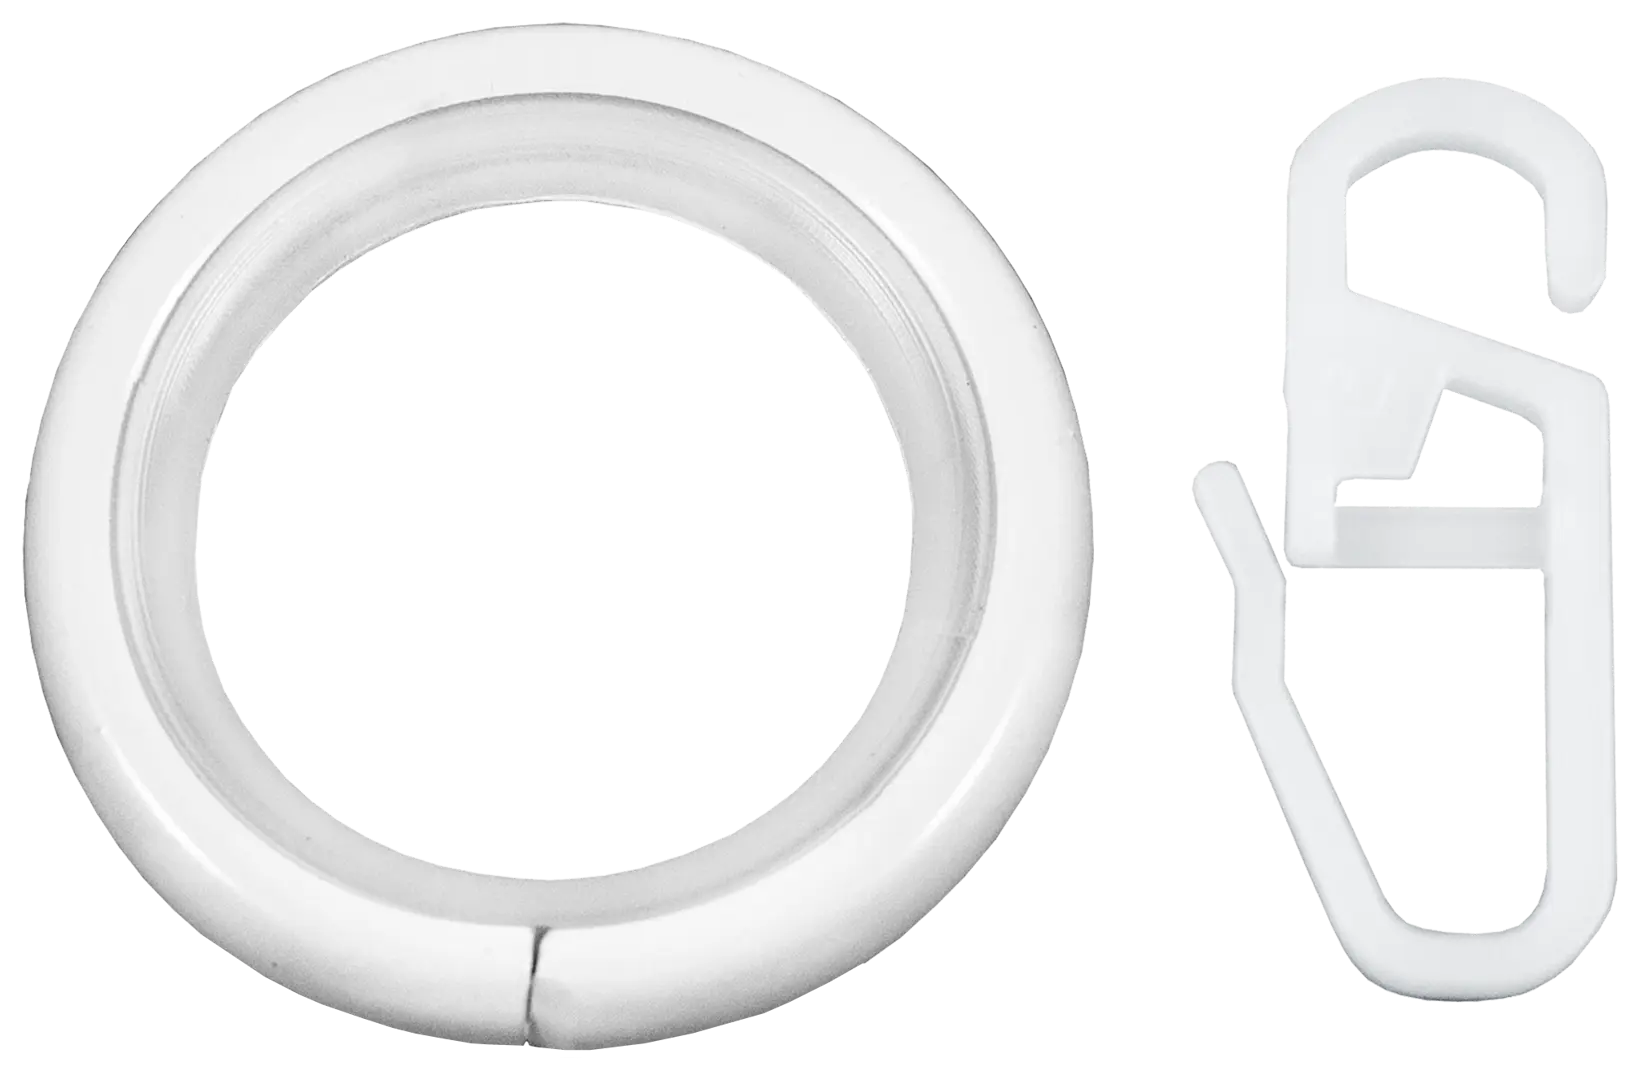 Кольцо с крючком металл цвет белый глянец, 2 см, 10 шт. кухонный стол винер g кремовый глянец кремовый металл